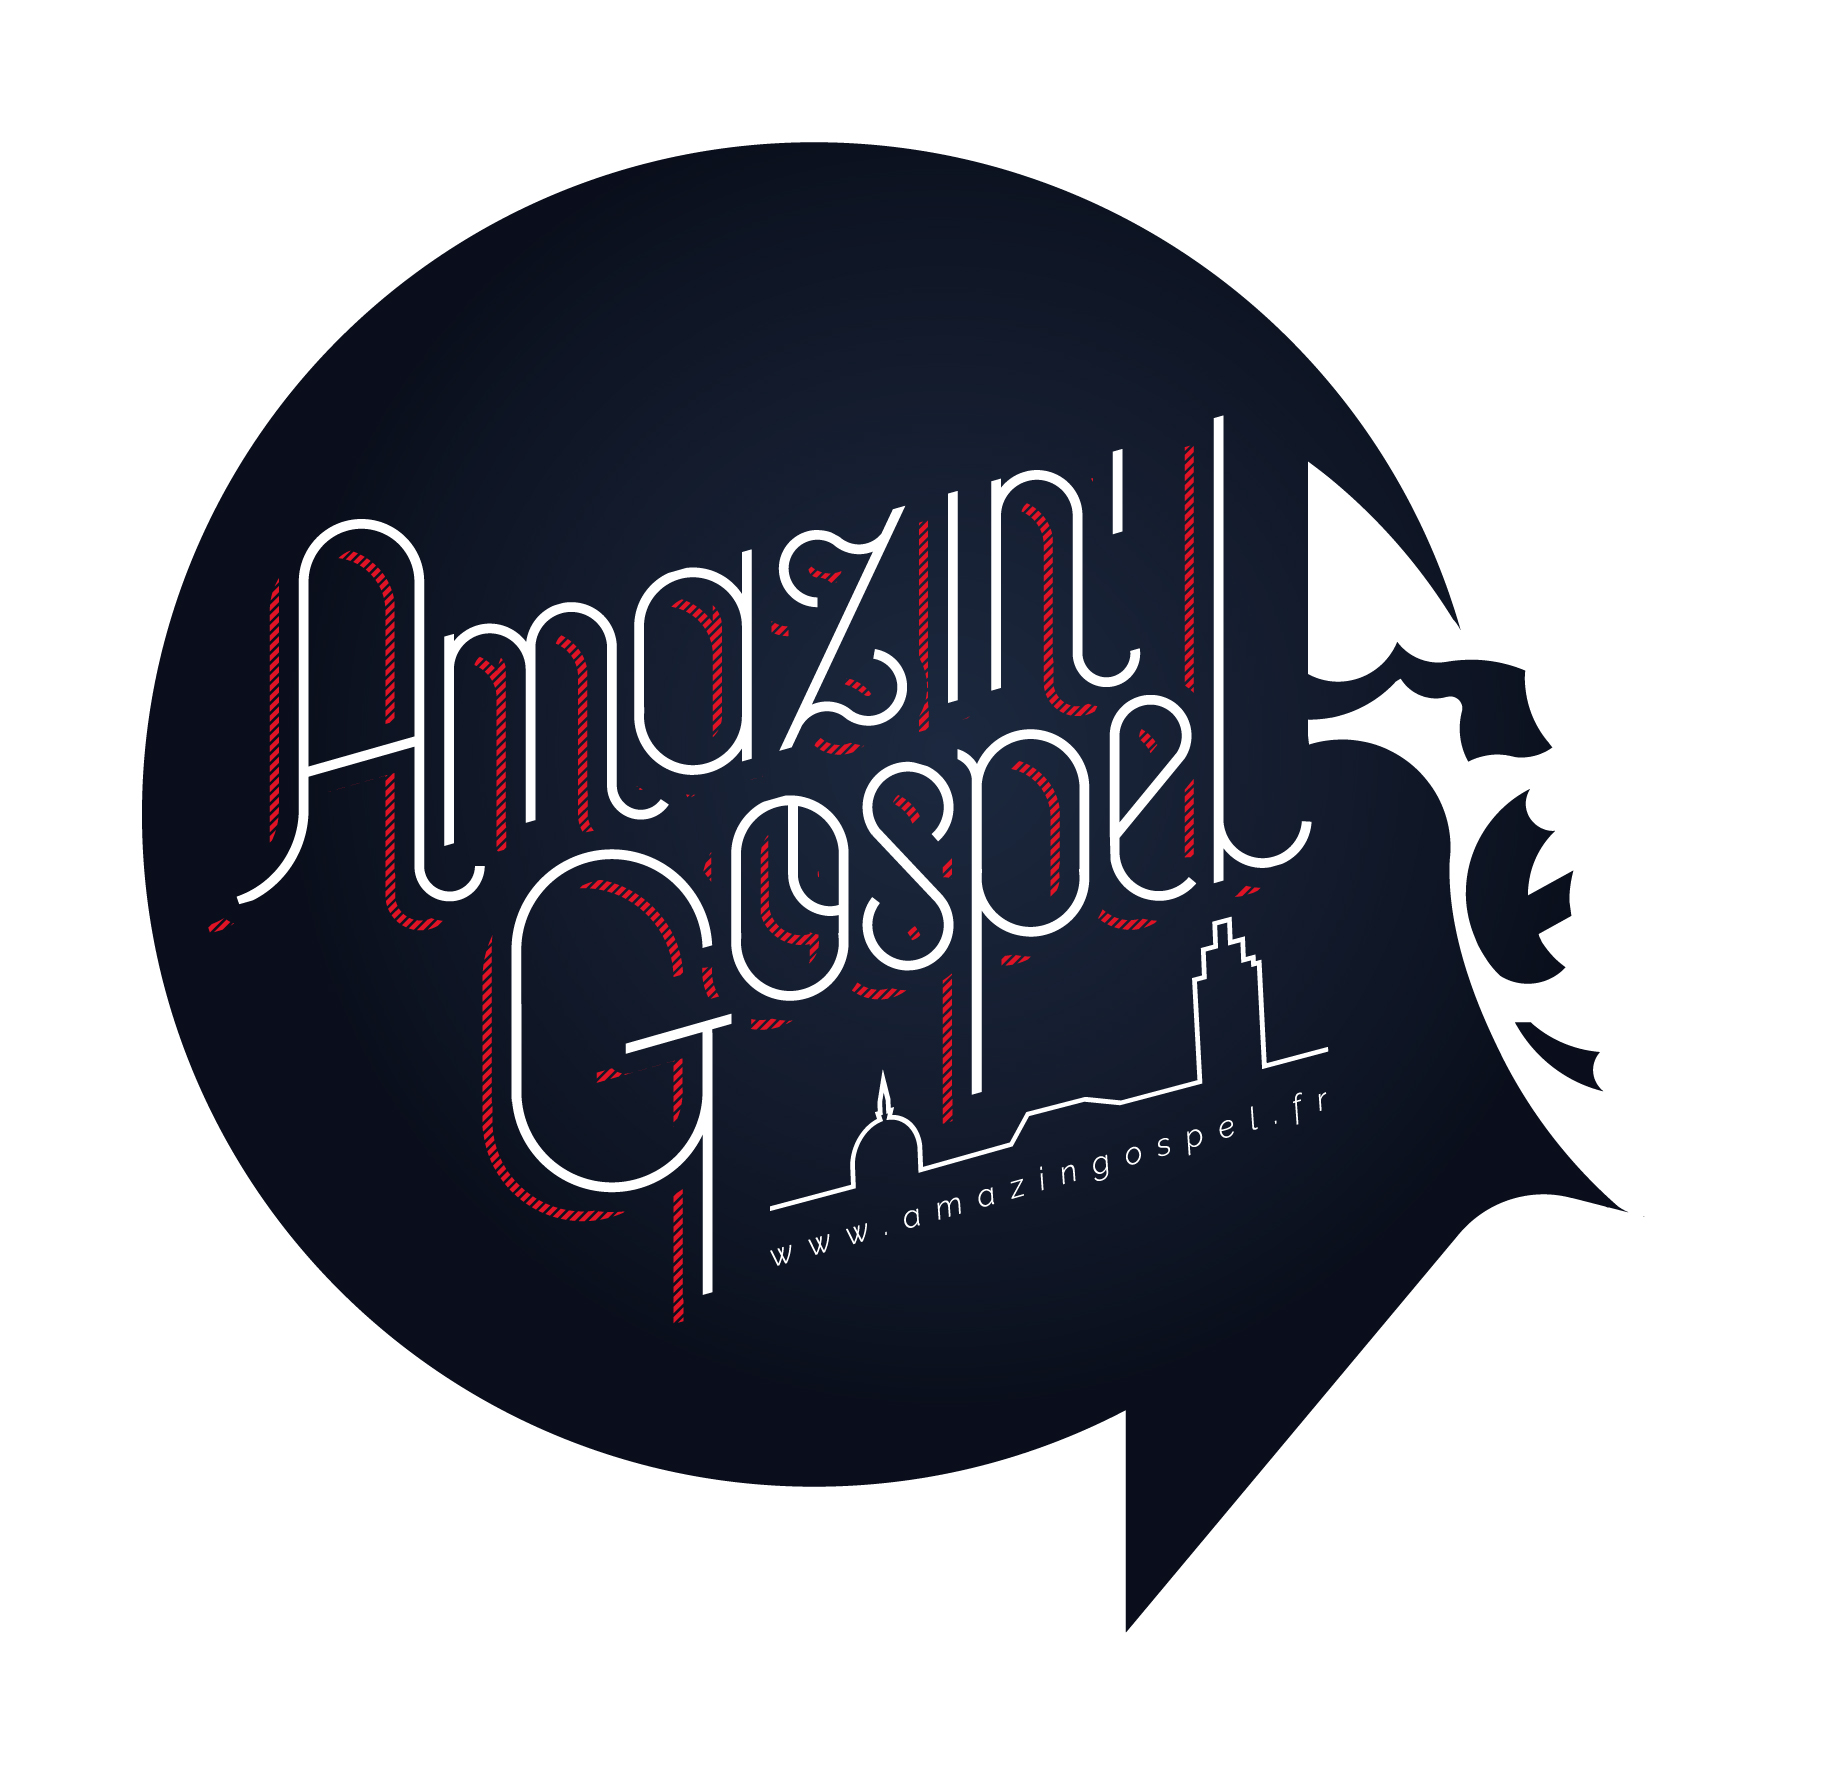 Amazin'Gospel (Amazin'Gospel)